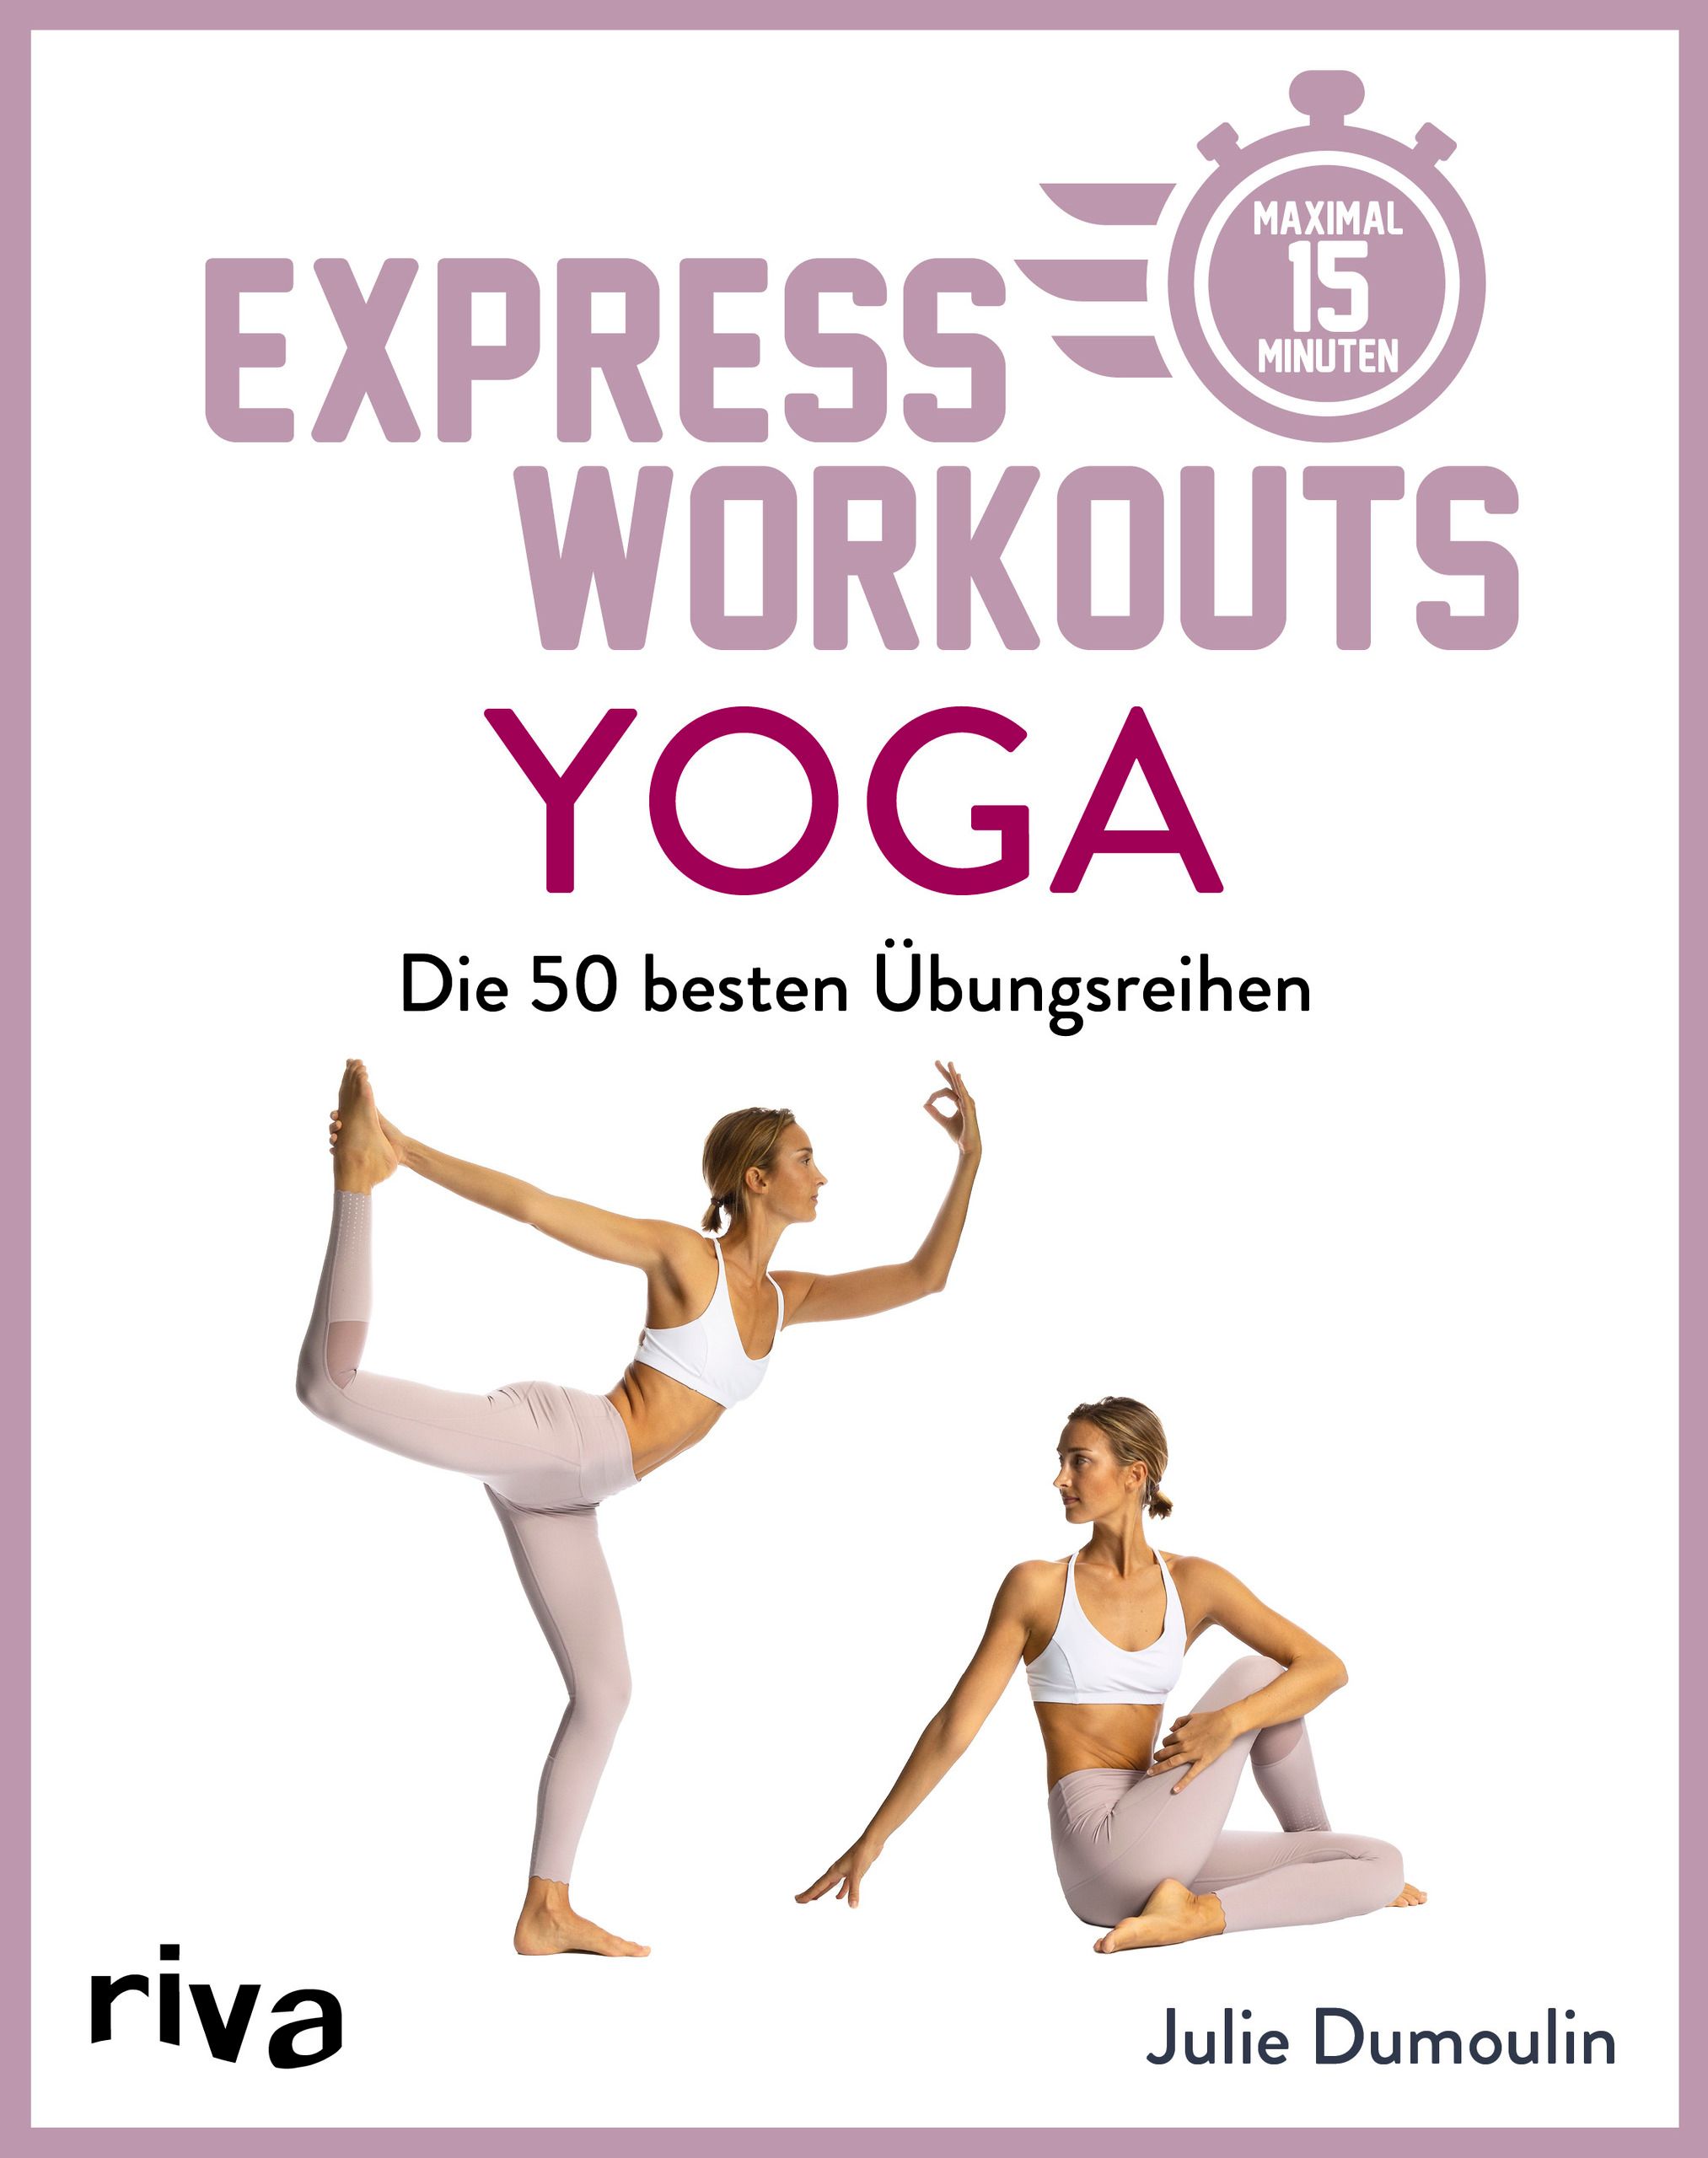 Express-Workouts – Yoga